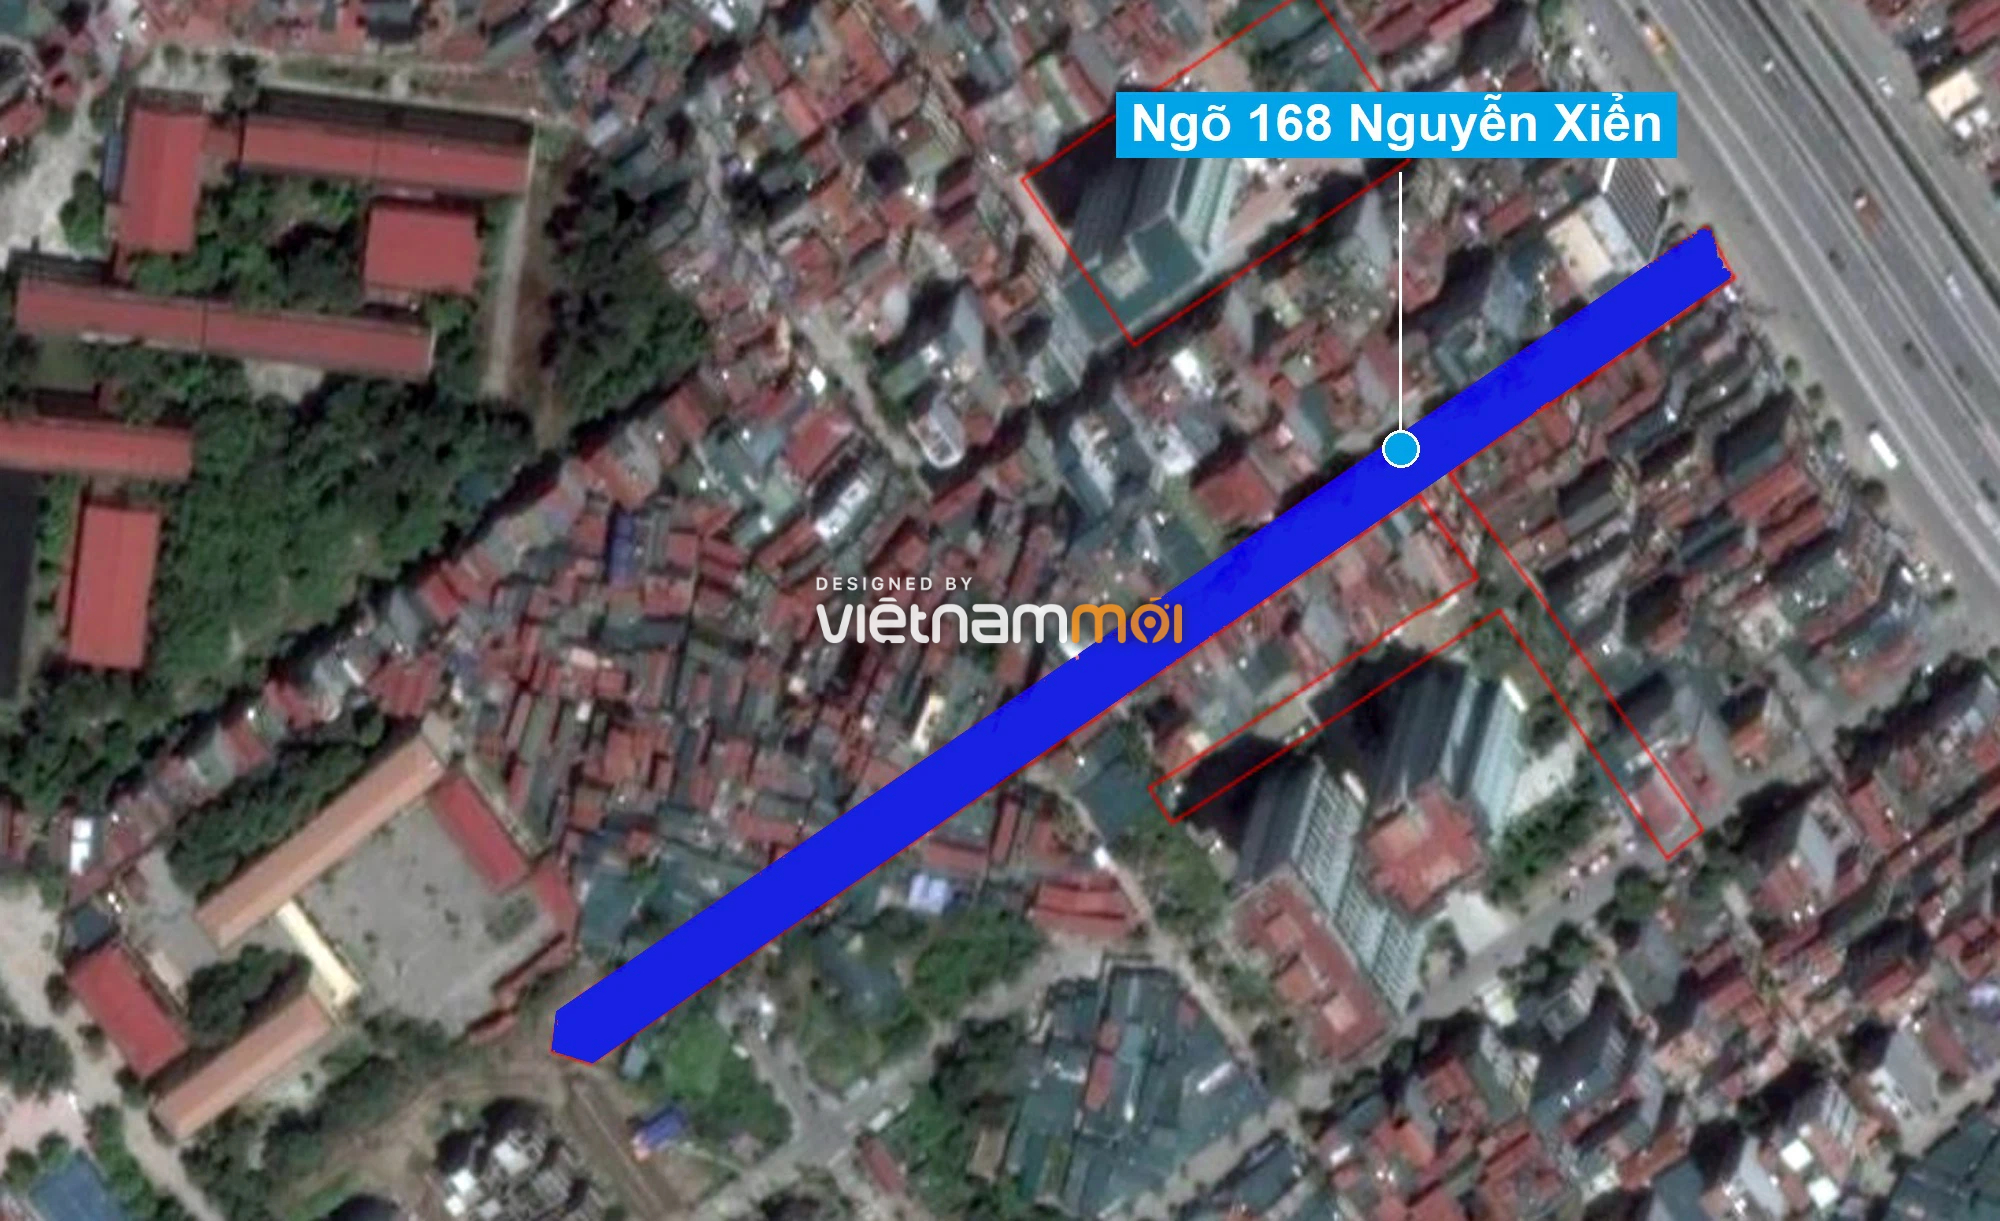 Những khu đất sắp thu hồi để mở đường ở quận Thanh Xuân, Hà Nội (phần 2) - Ảnh 2.